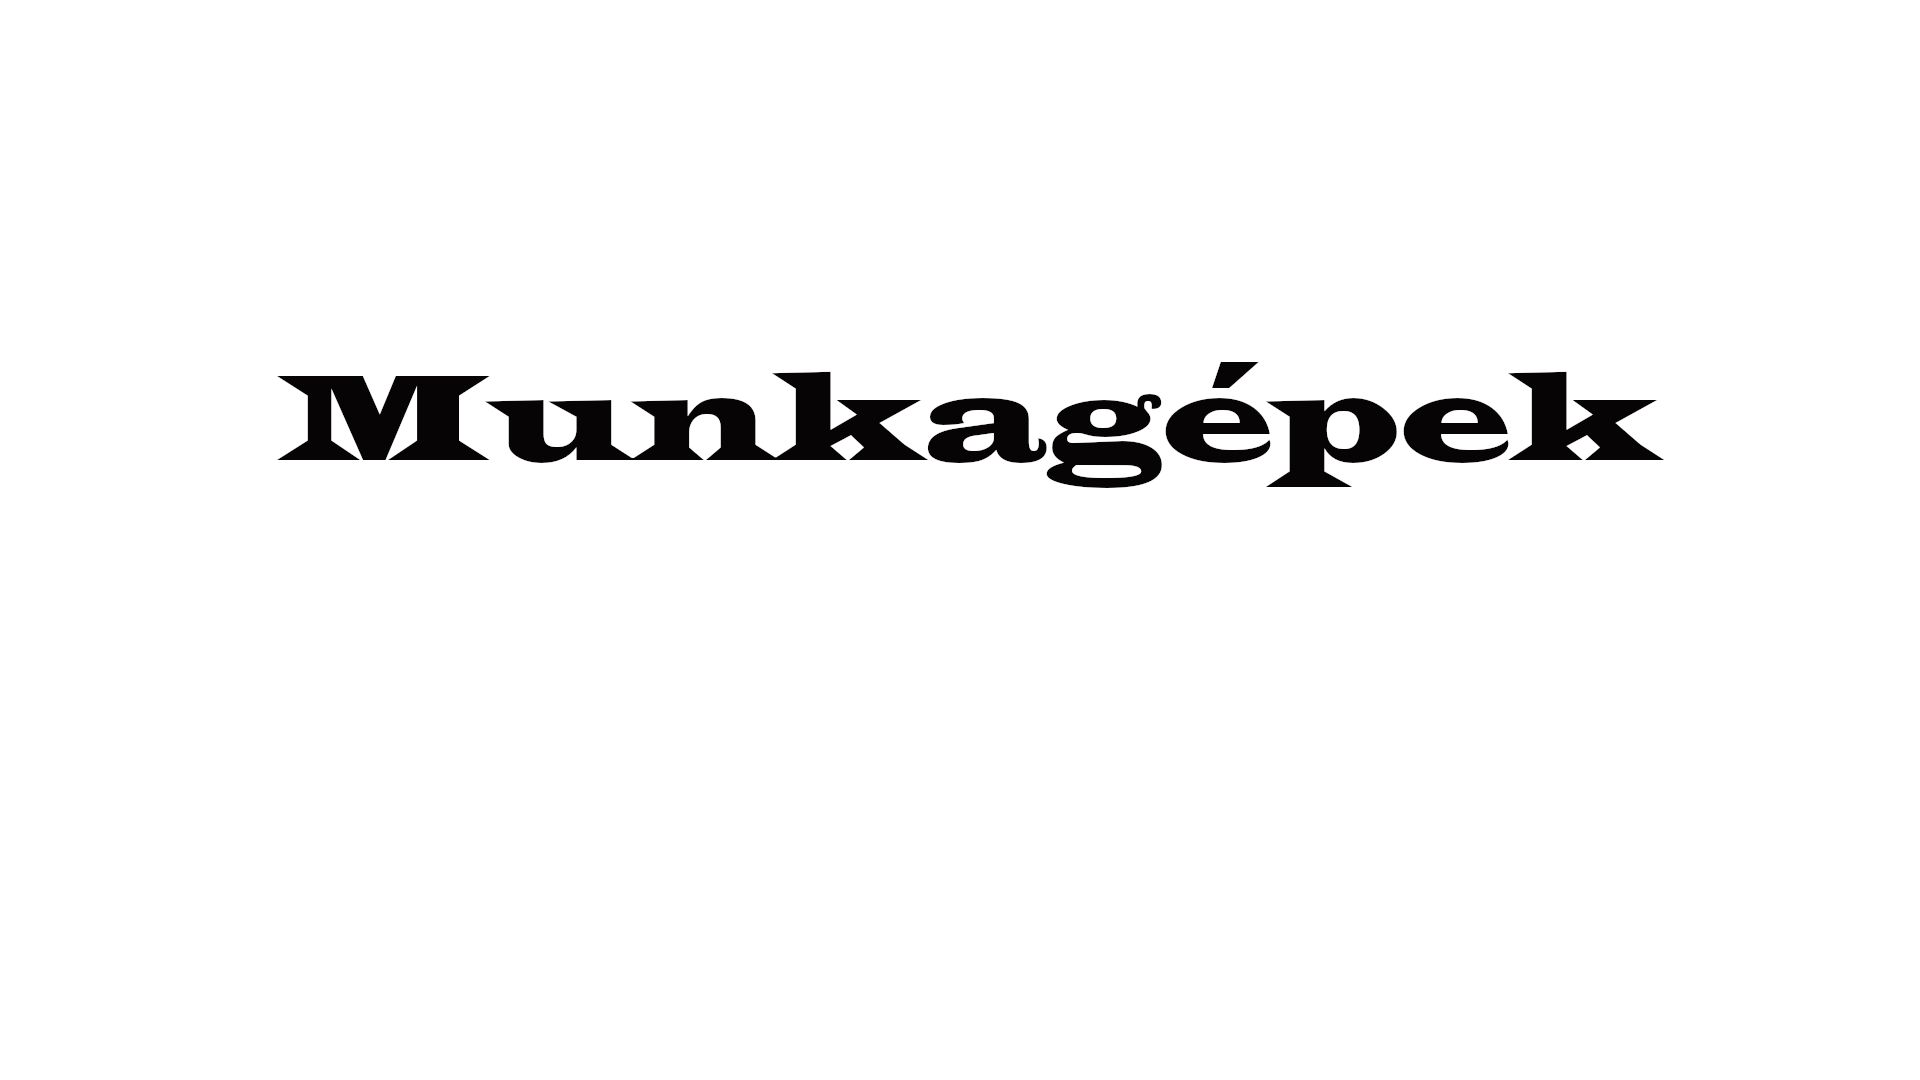 Munkagpek